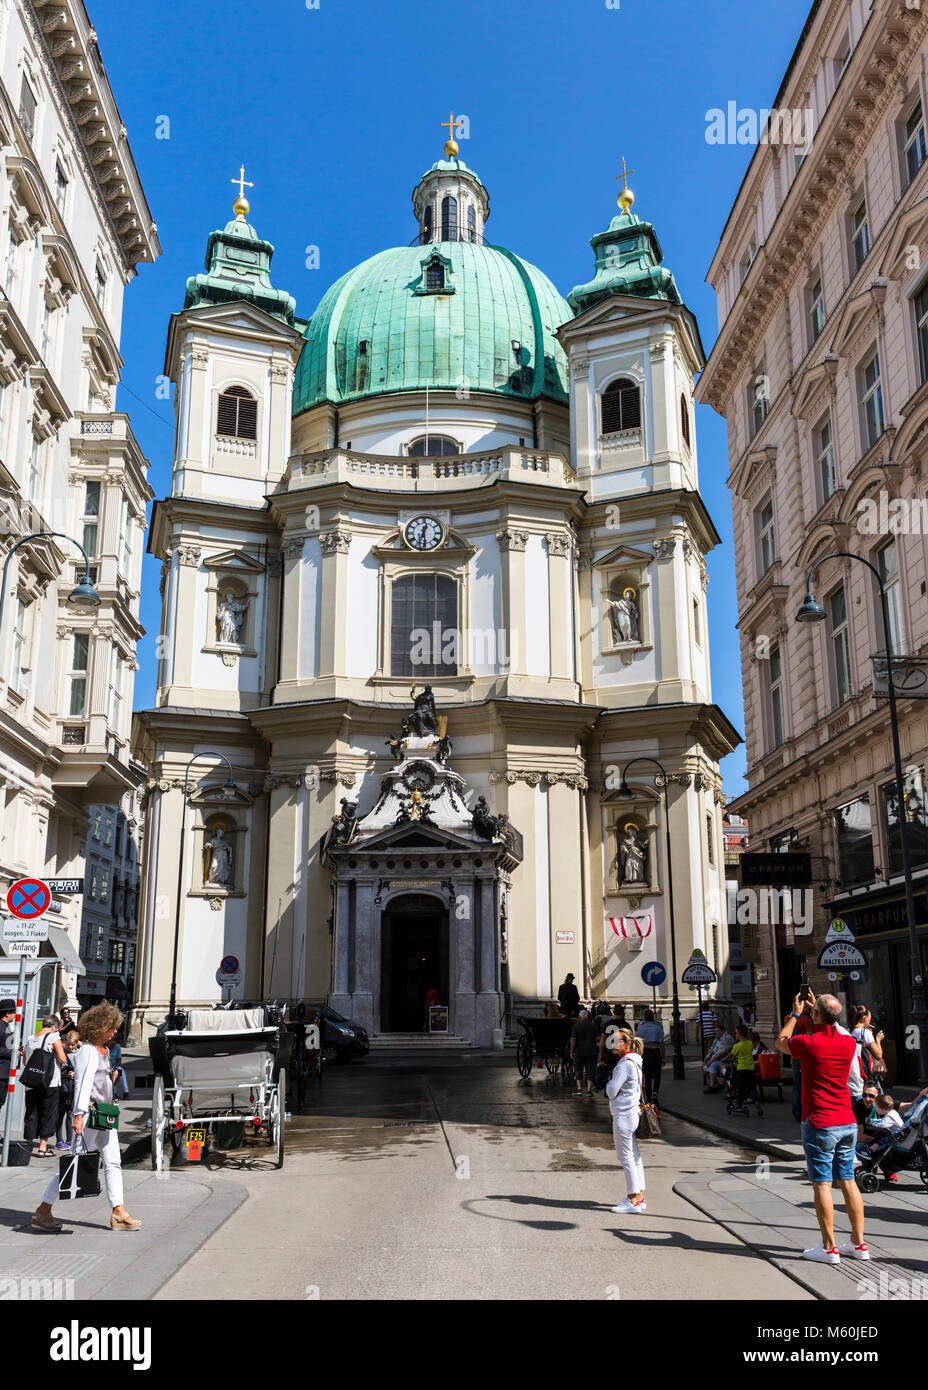 St. Peter's Kirche, von Jungferngasse, Wien, Wien, Österreich. Stockfoto